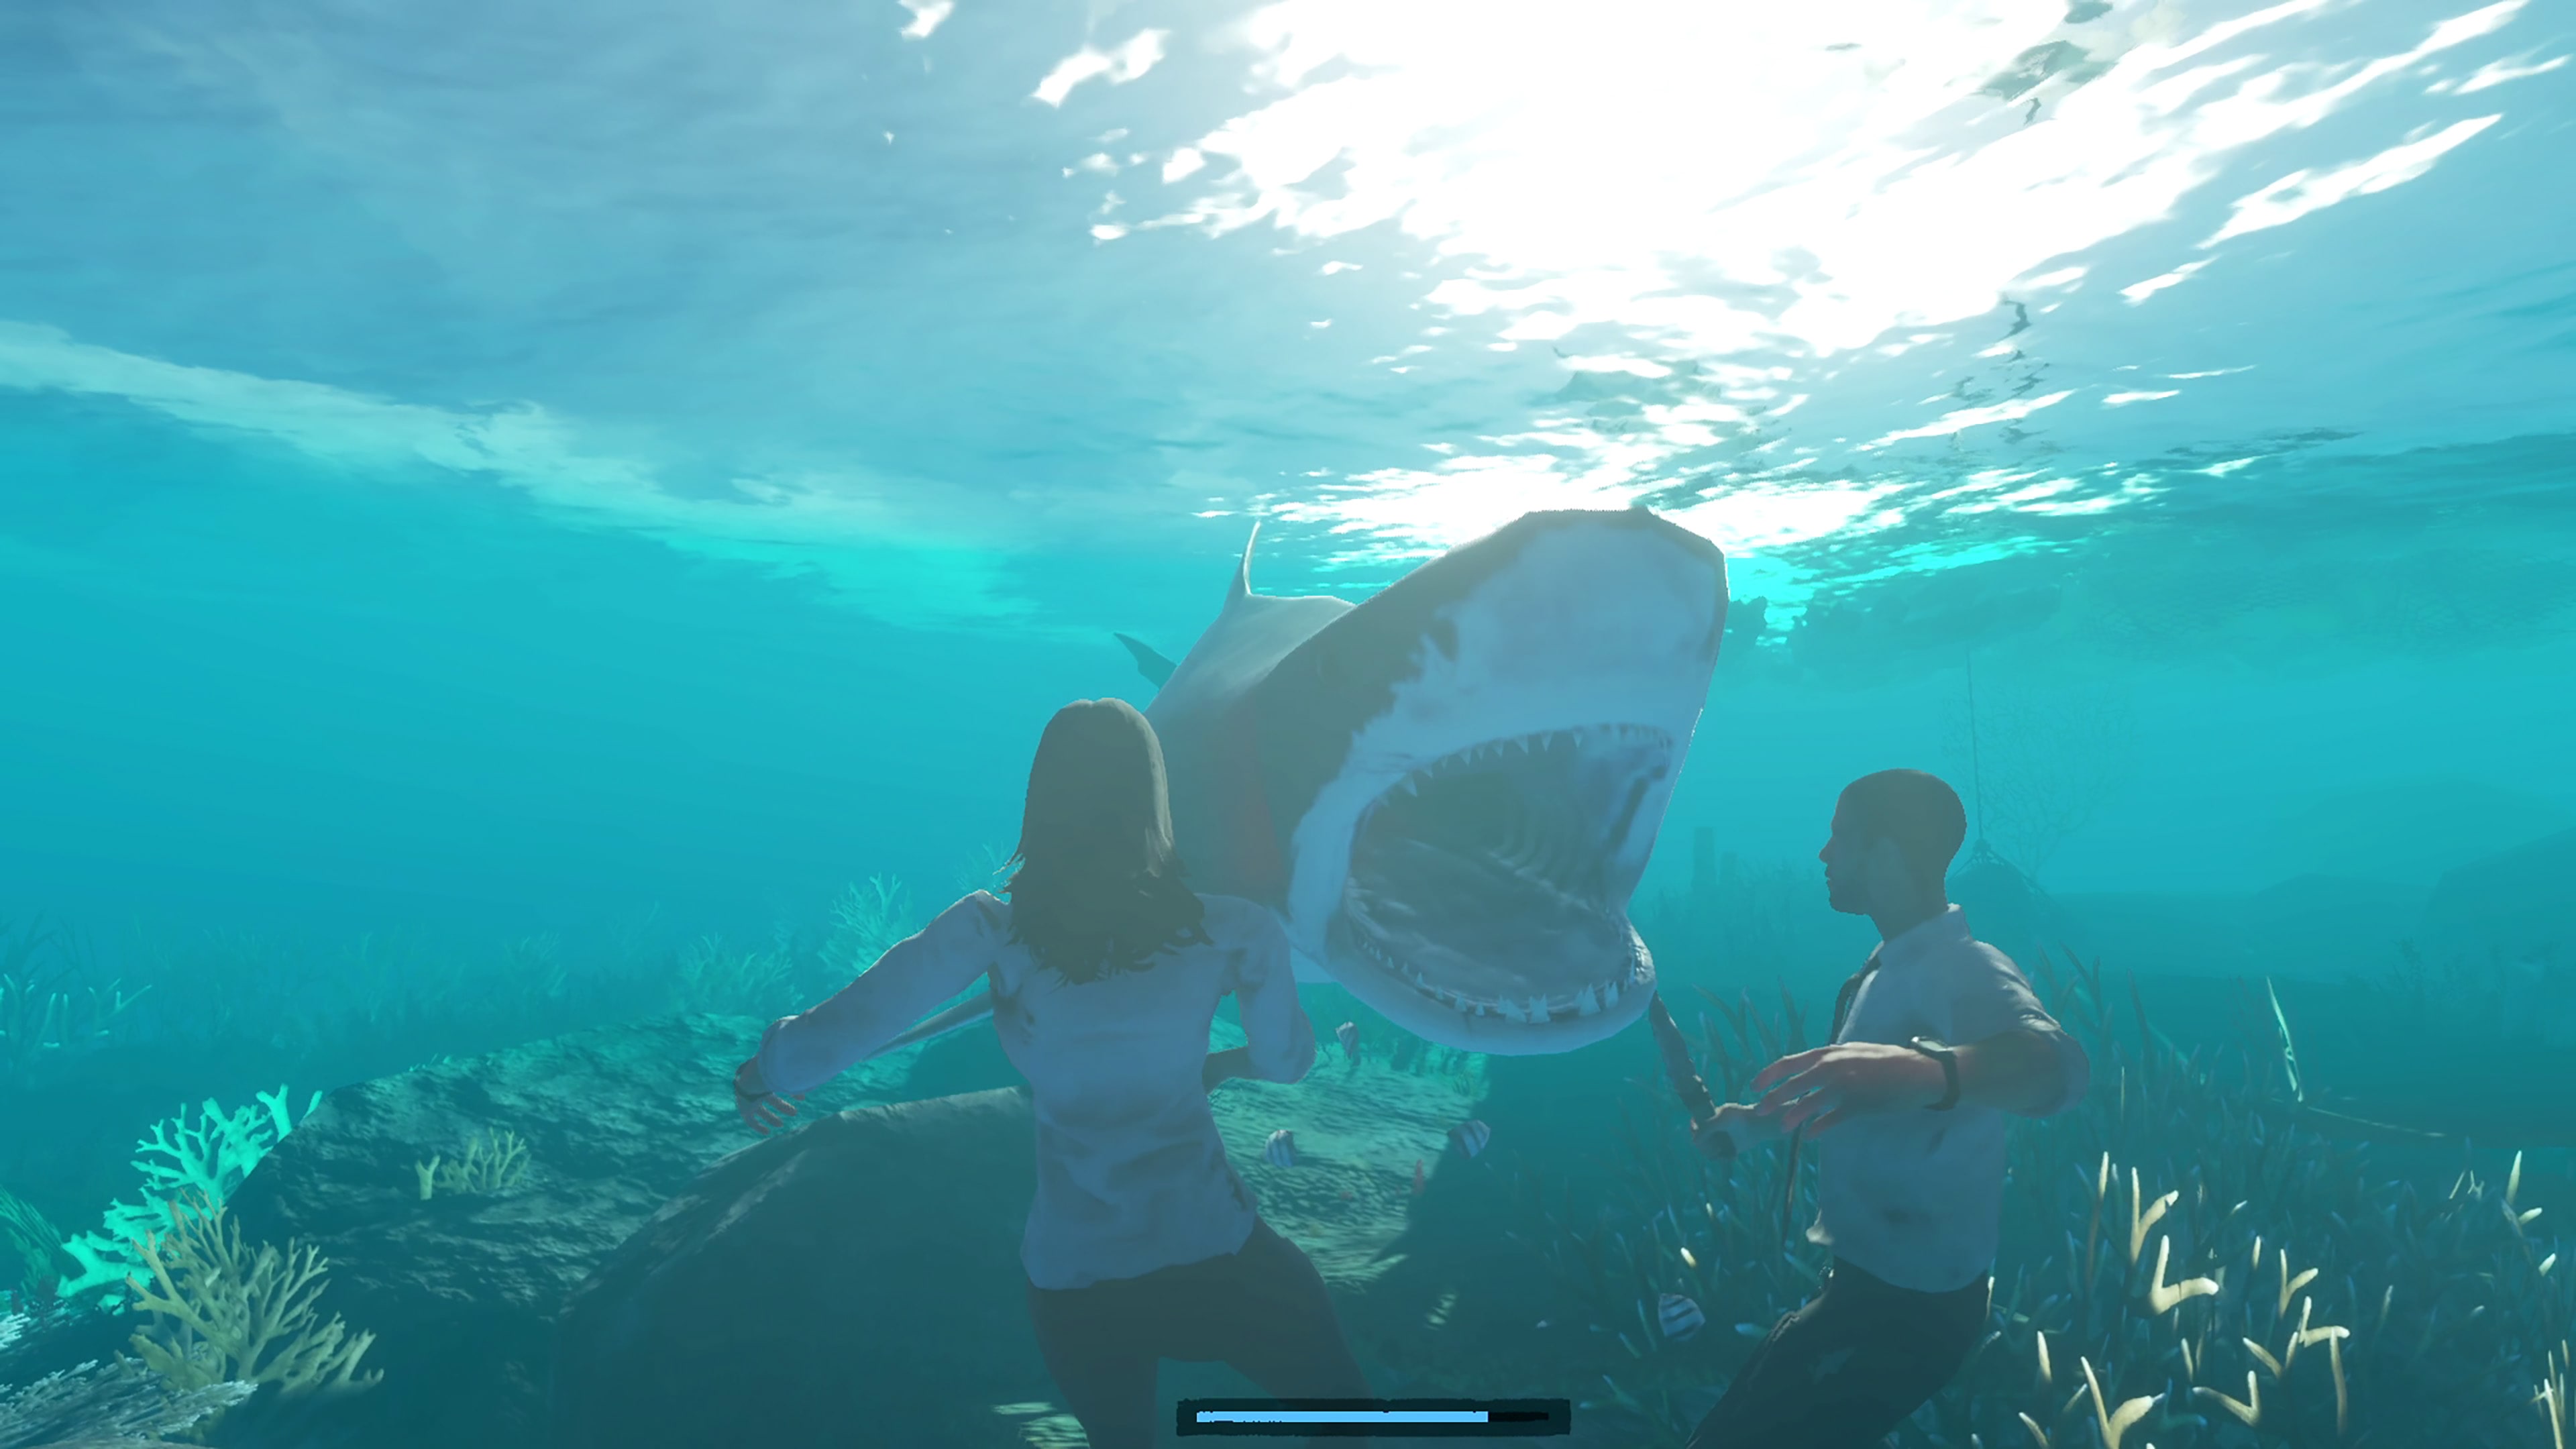 Stranded Deep: veja dicas de como jogar no PS4 e PS5